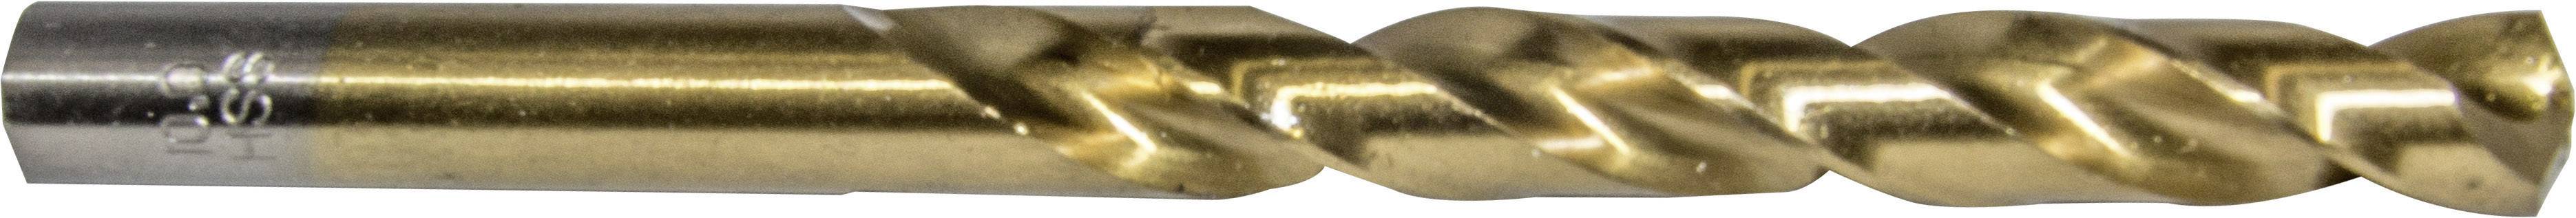 HELLER 29278 8 Metall-Spiralbohrer 1 Stück 12 mm Gesamtlänge 151 mm 1 St.